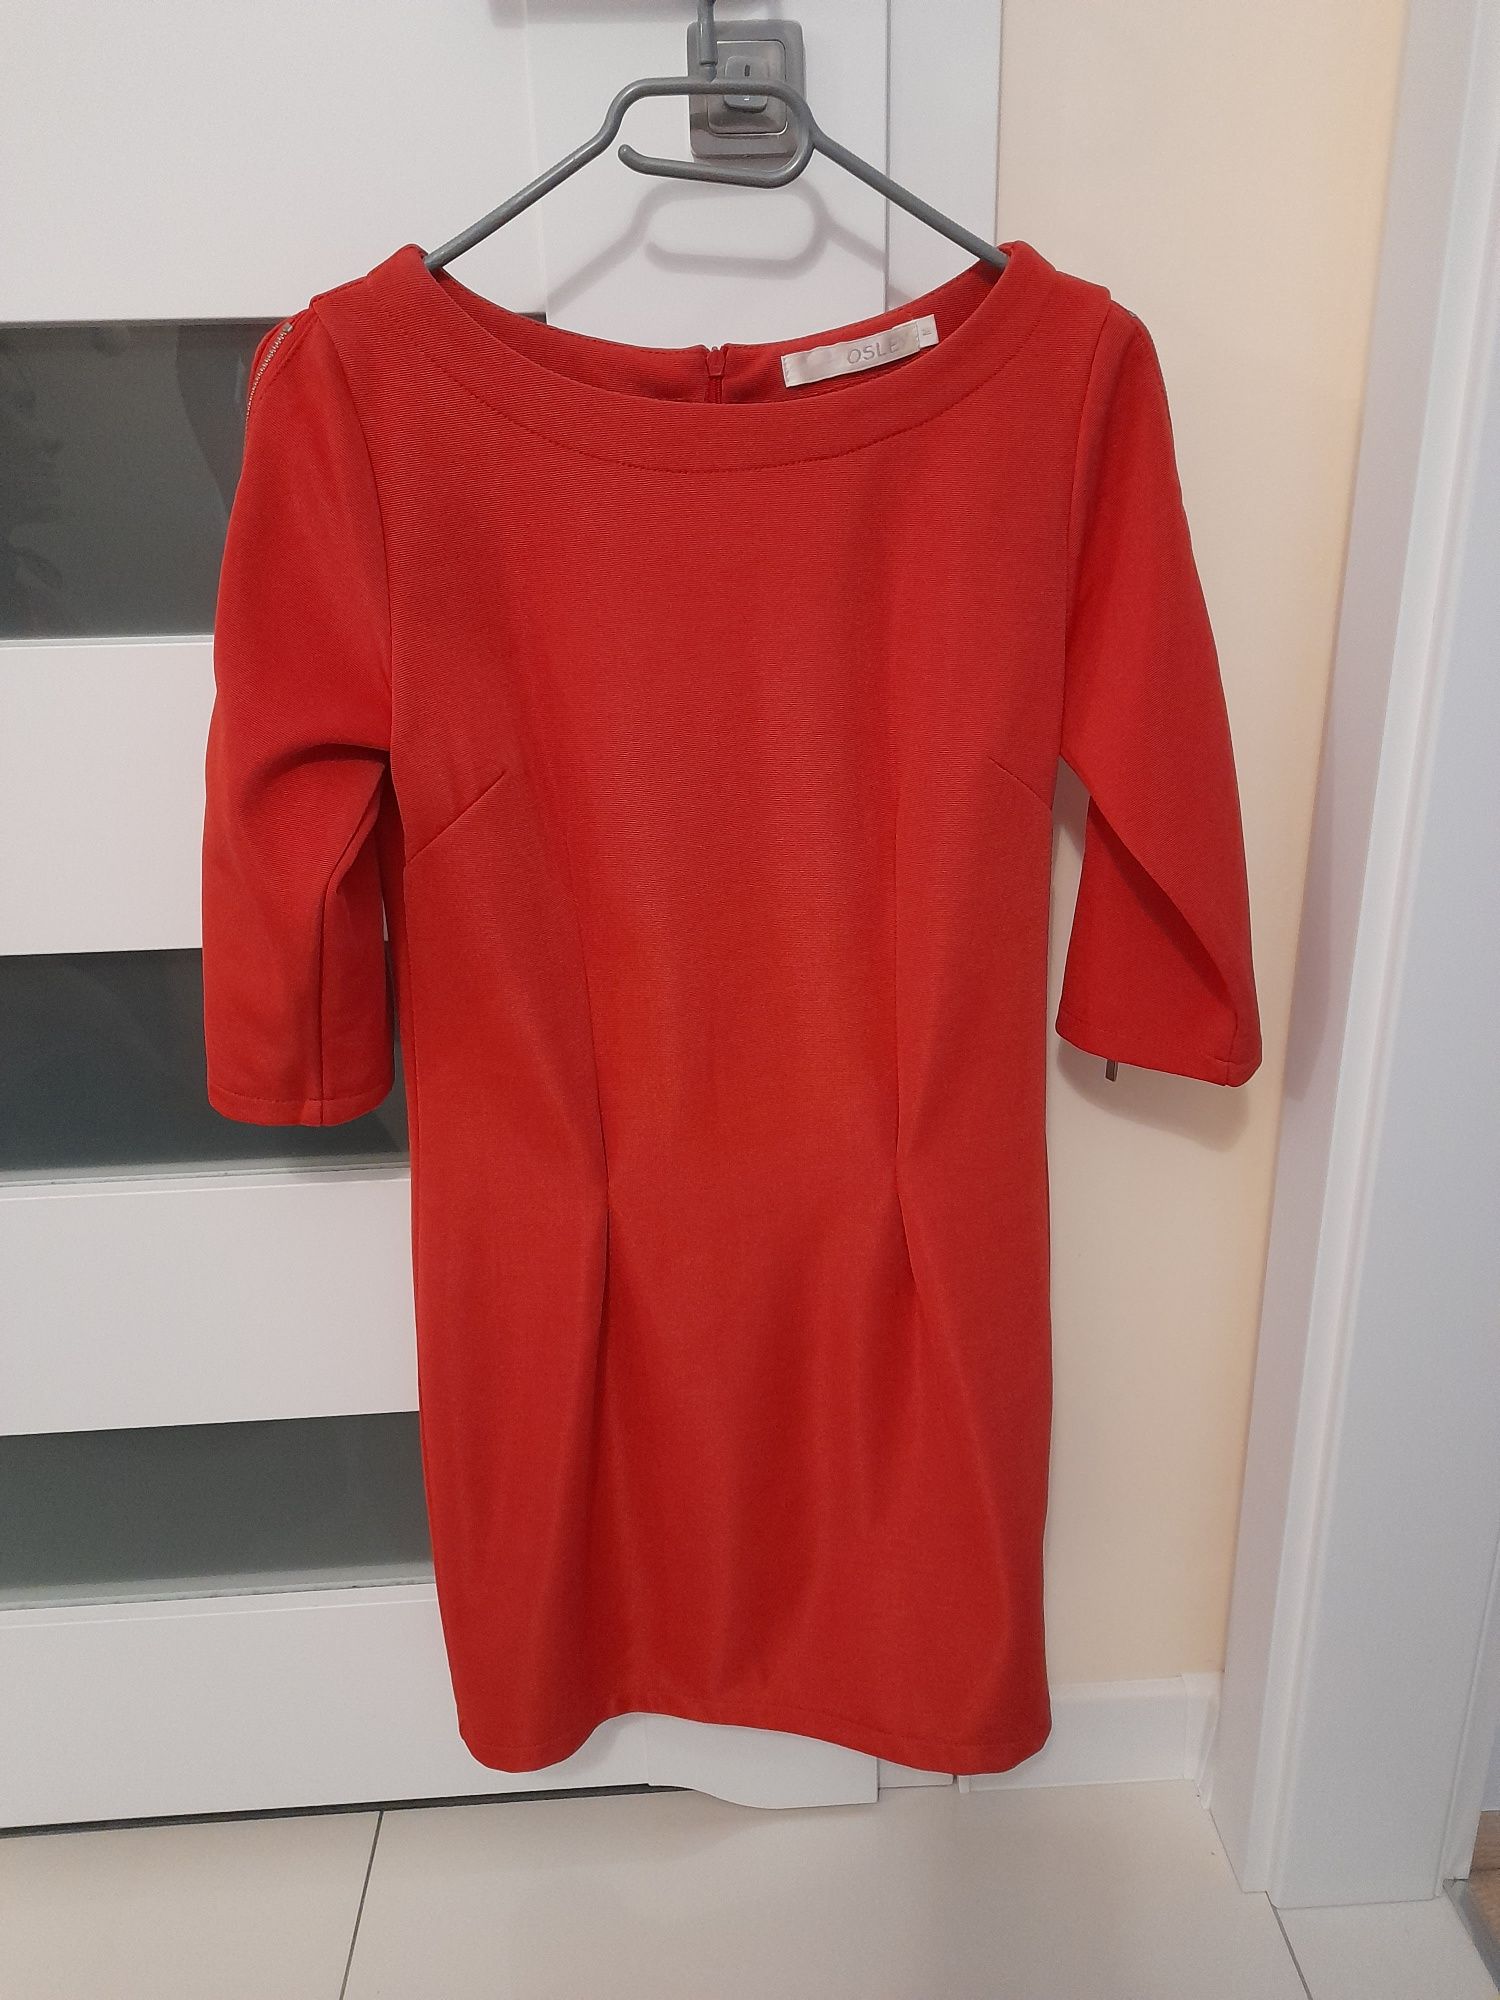 Czerwona sukienka mini z suwakami na rękawach r. M